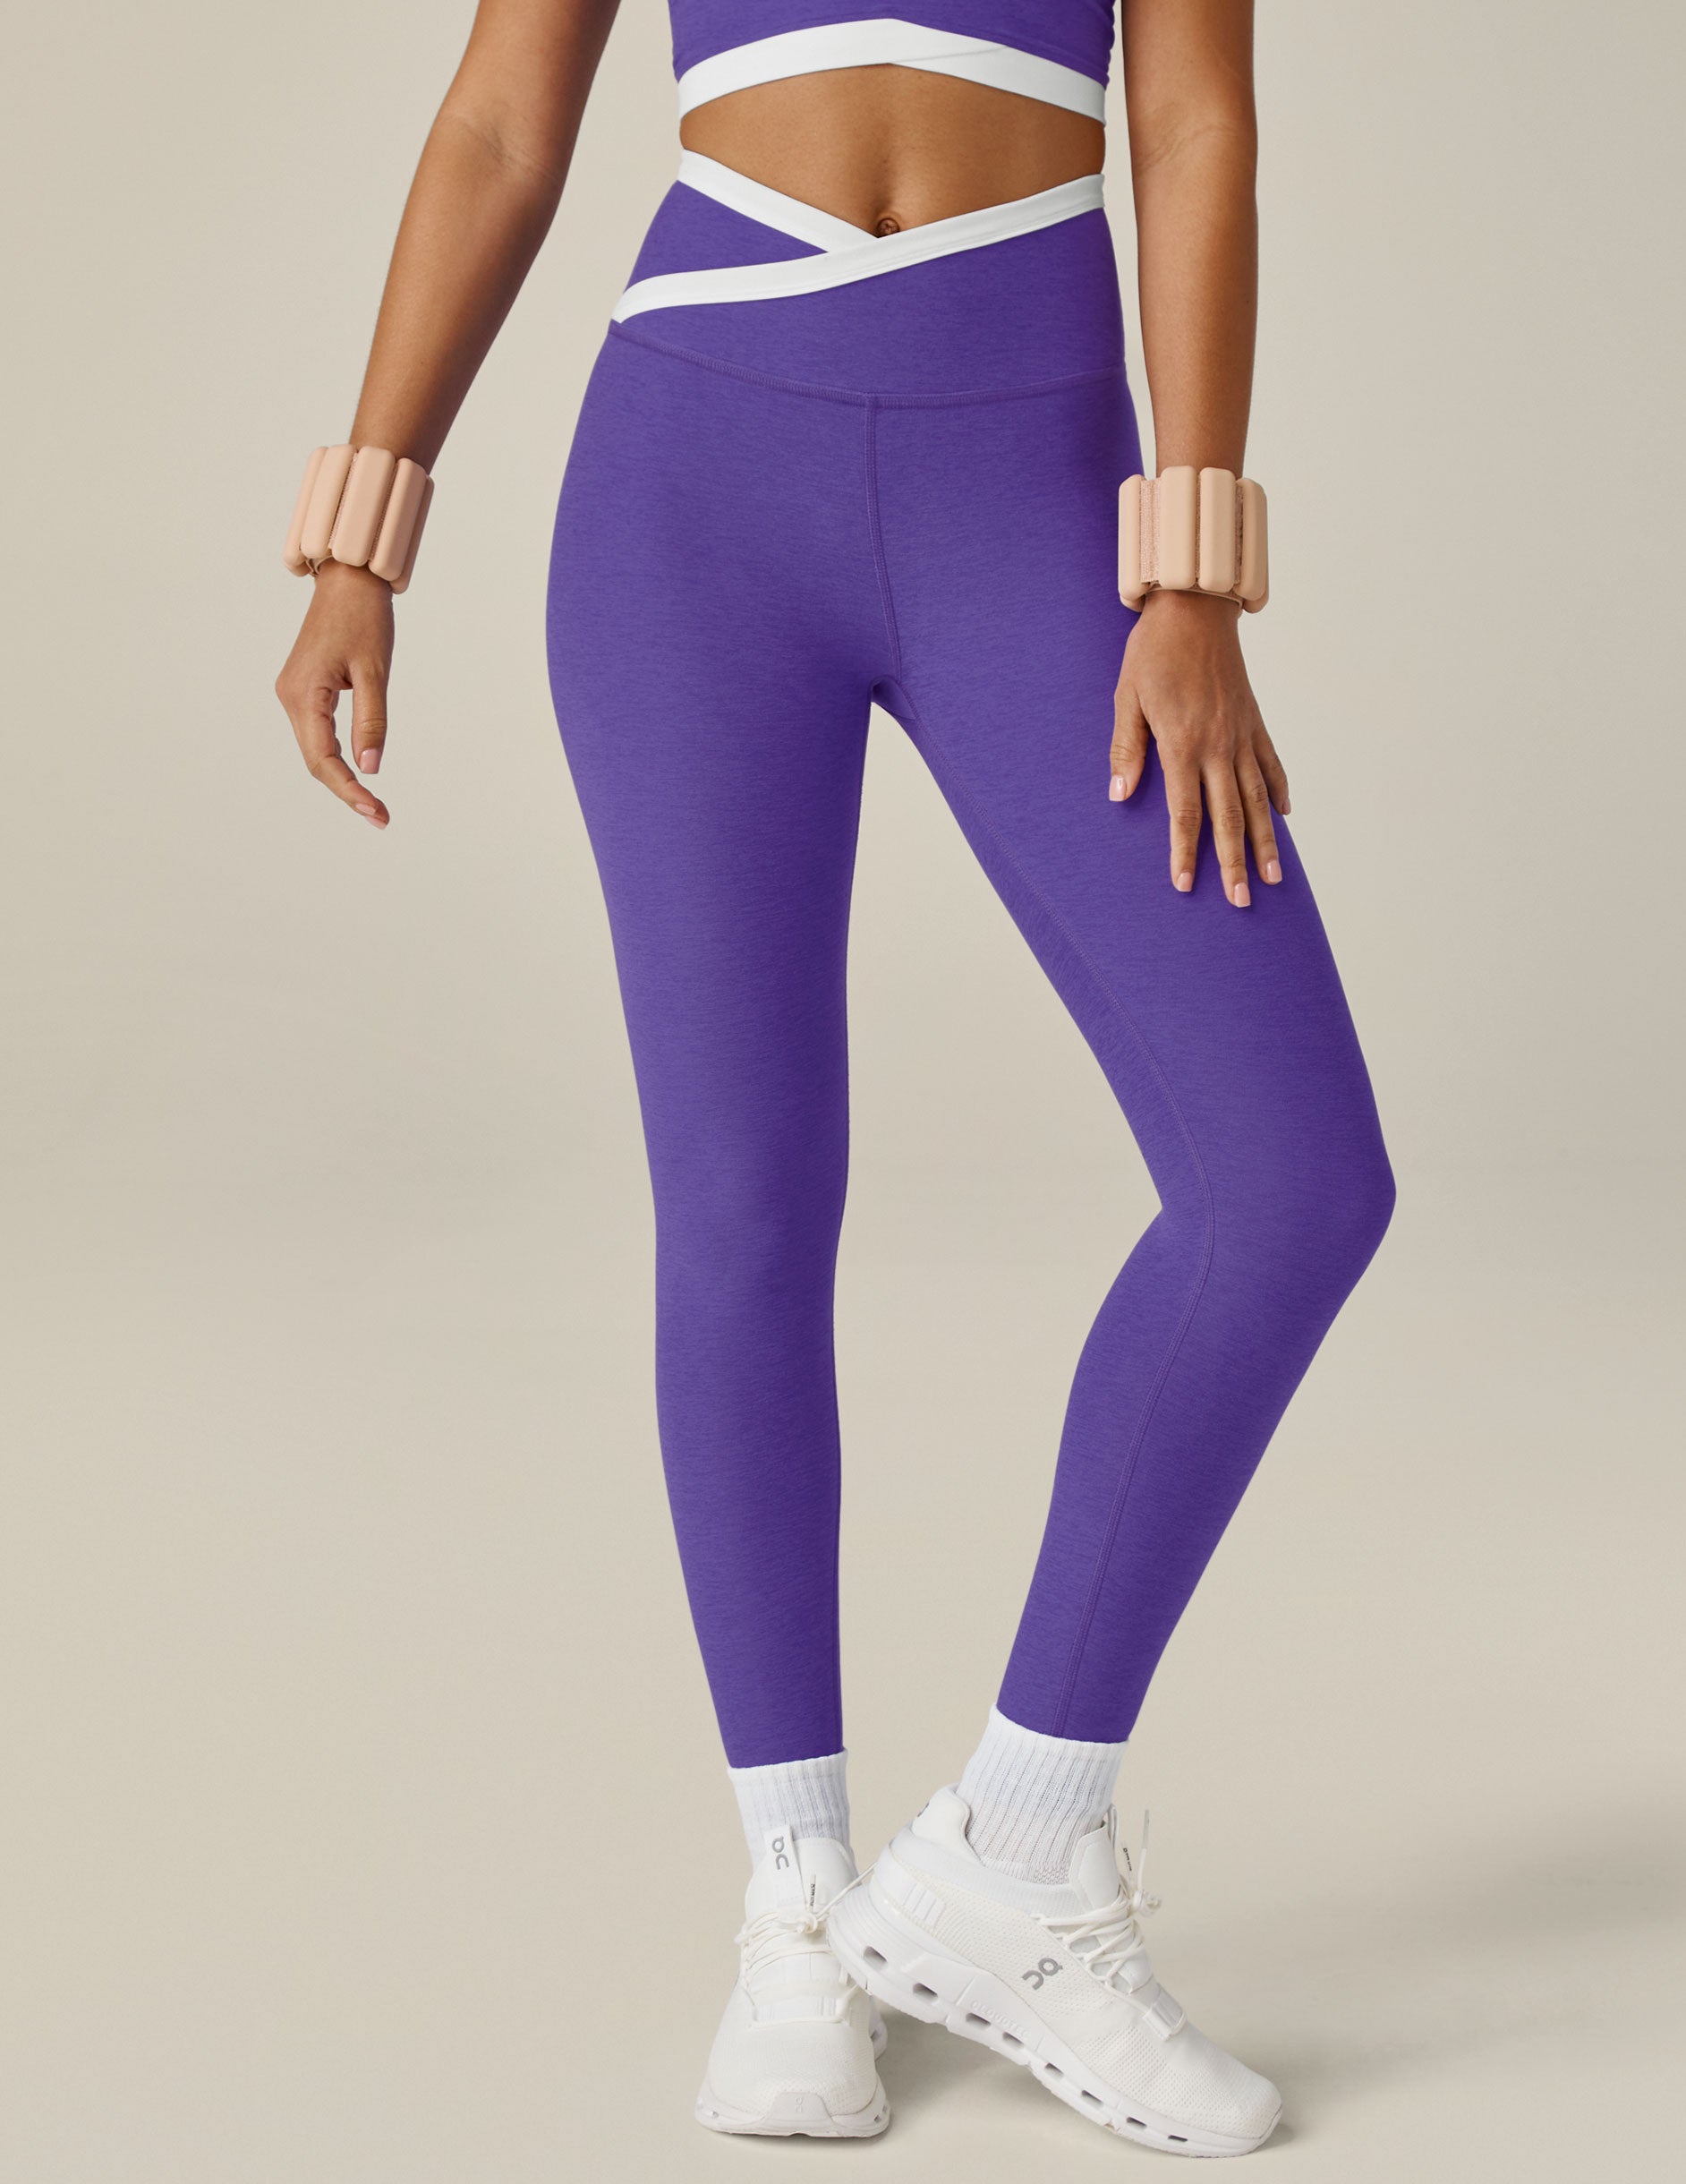 Purple Galaxy Space Leggings Yoga Lounge Wear Size Women's Medium